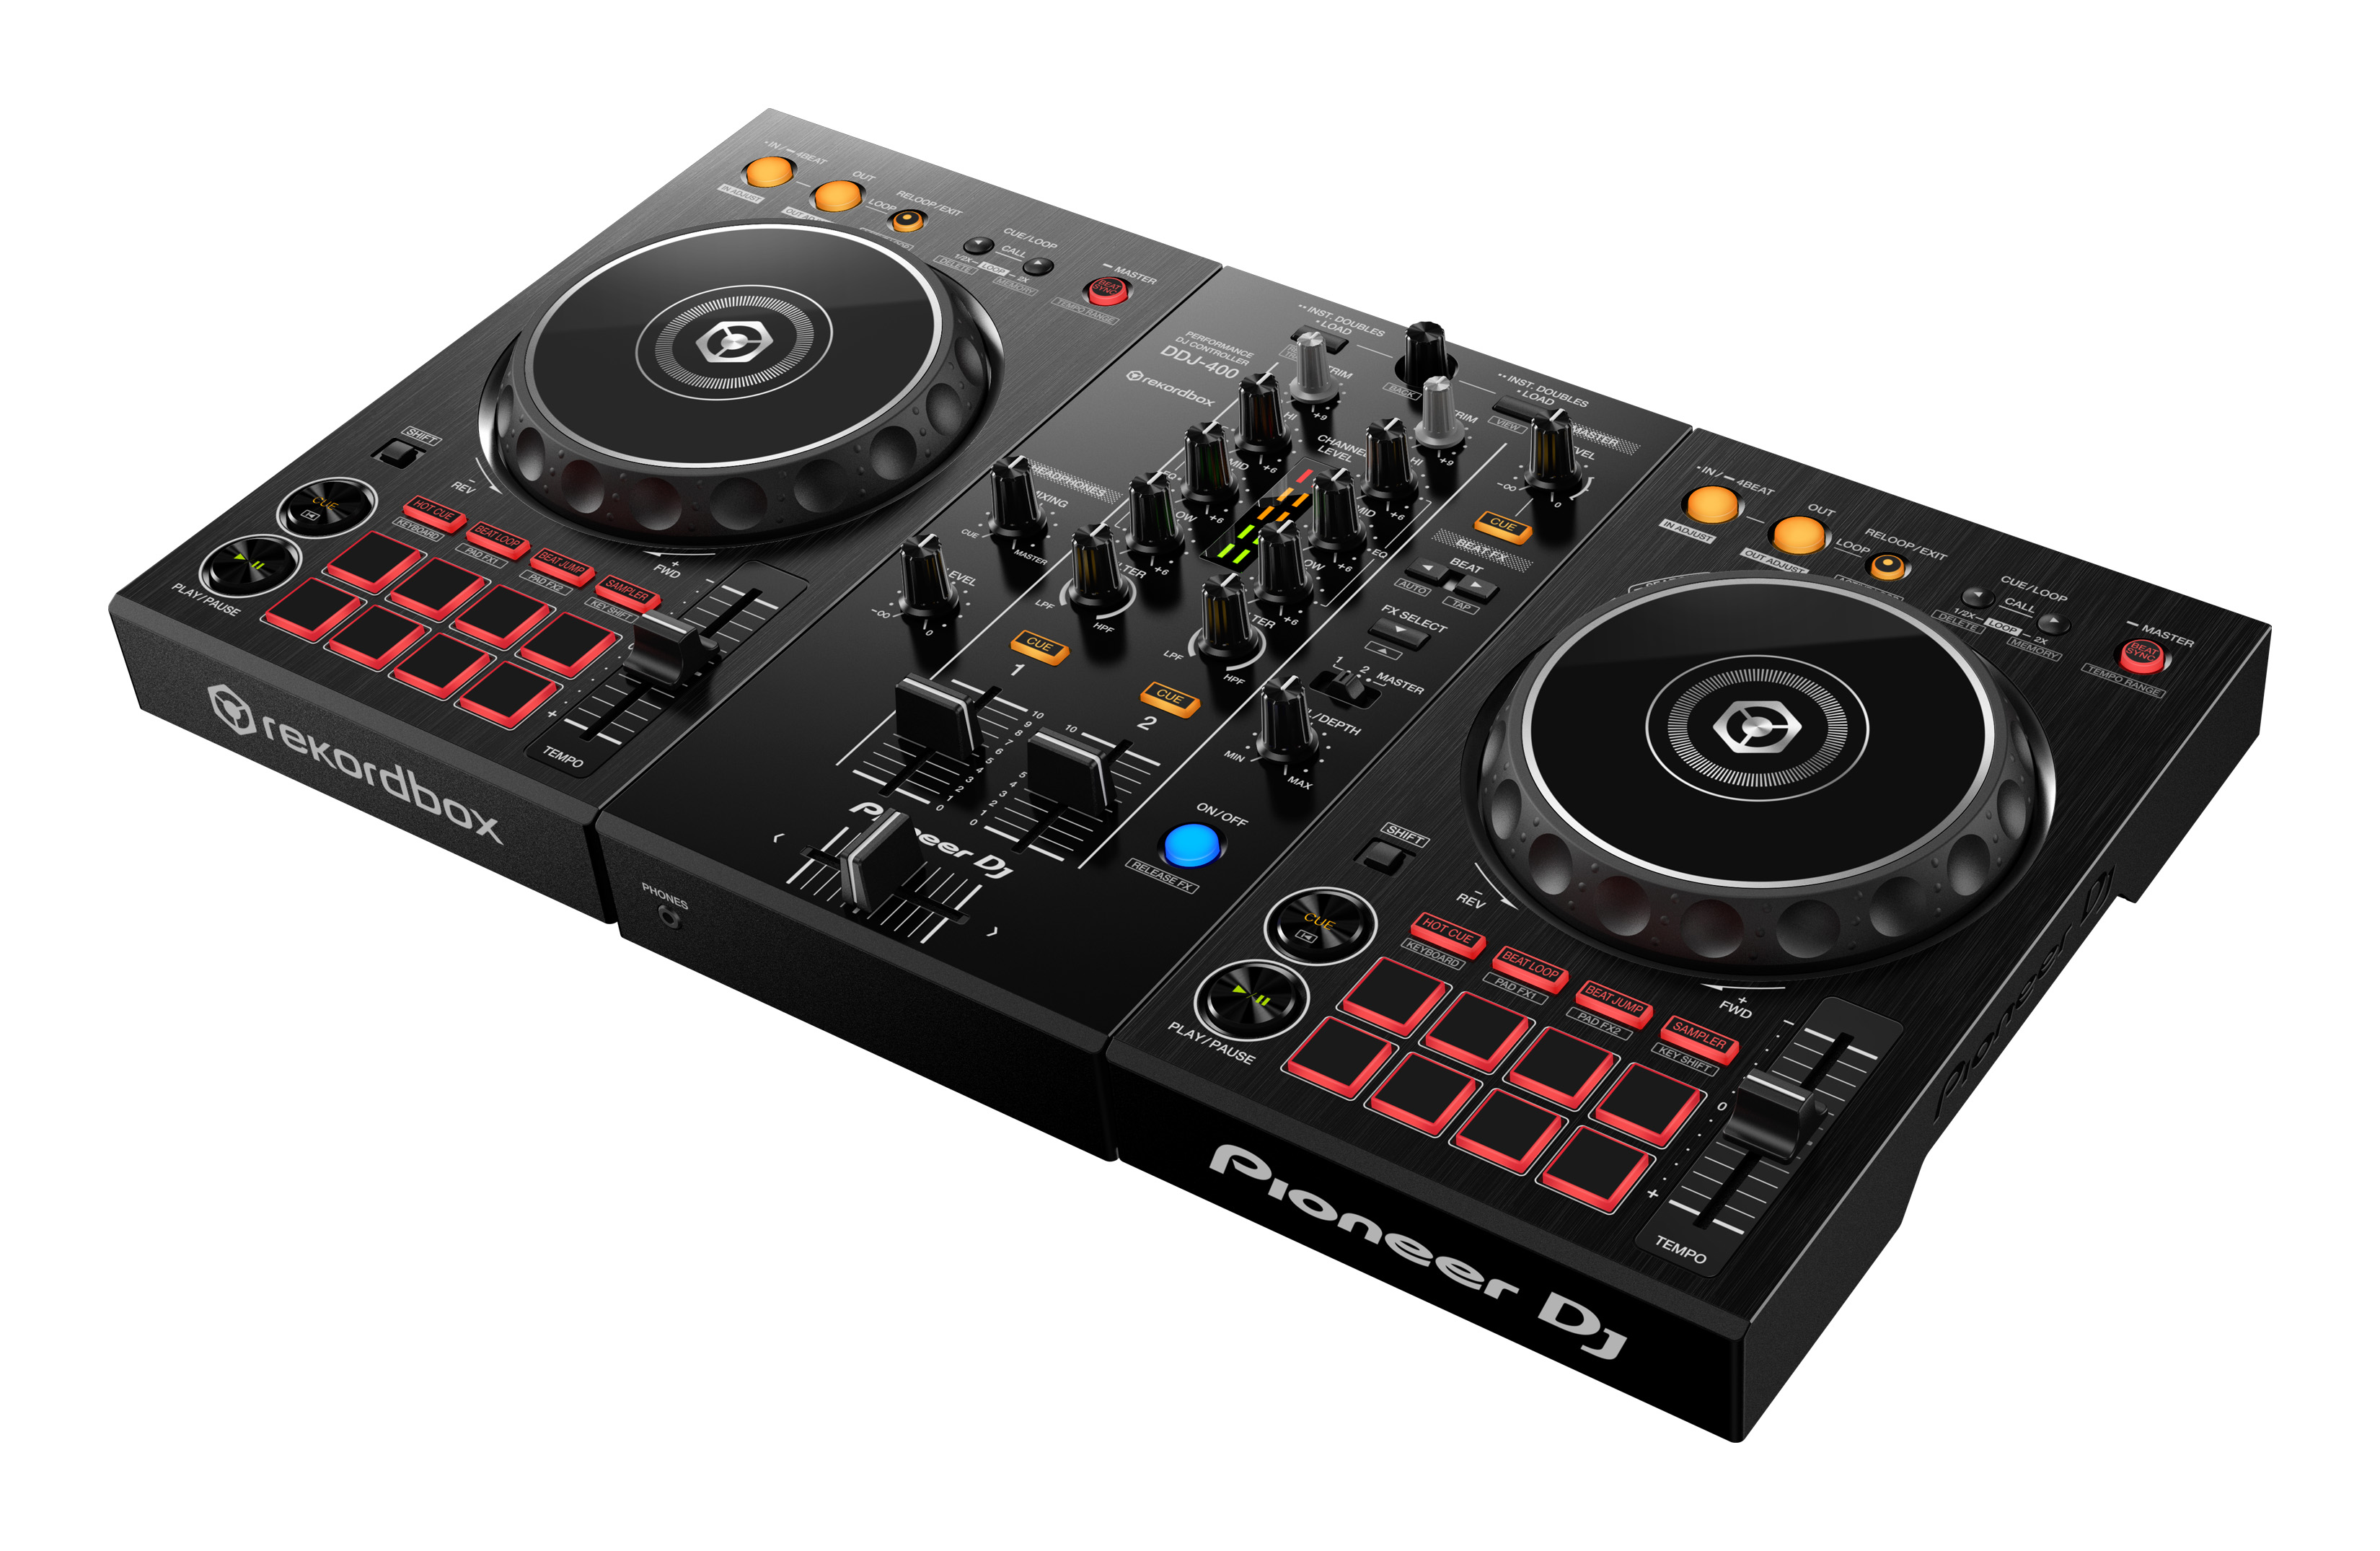 Nuevo controlador Pioneer DDJ-400 compatible con Rekordbox DJ